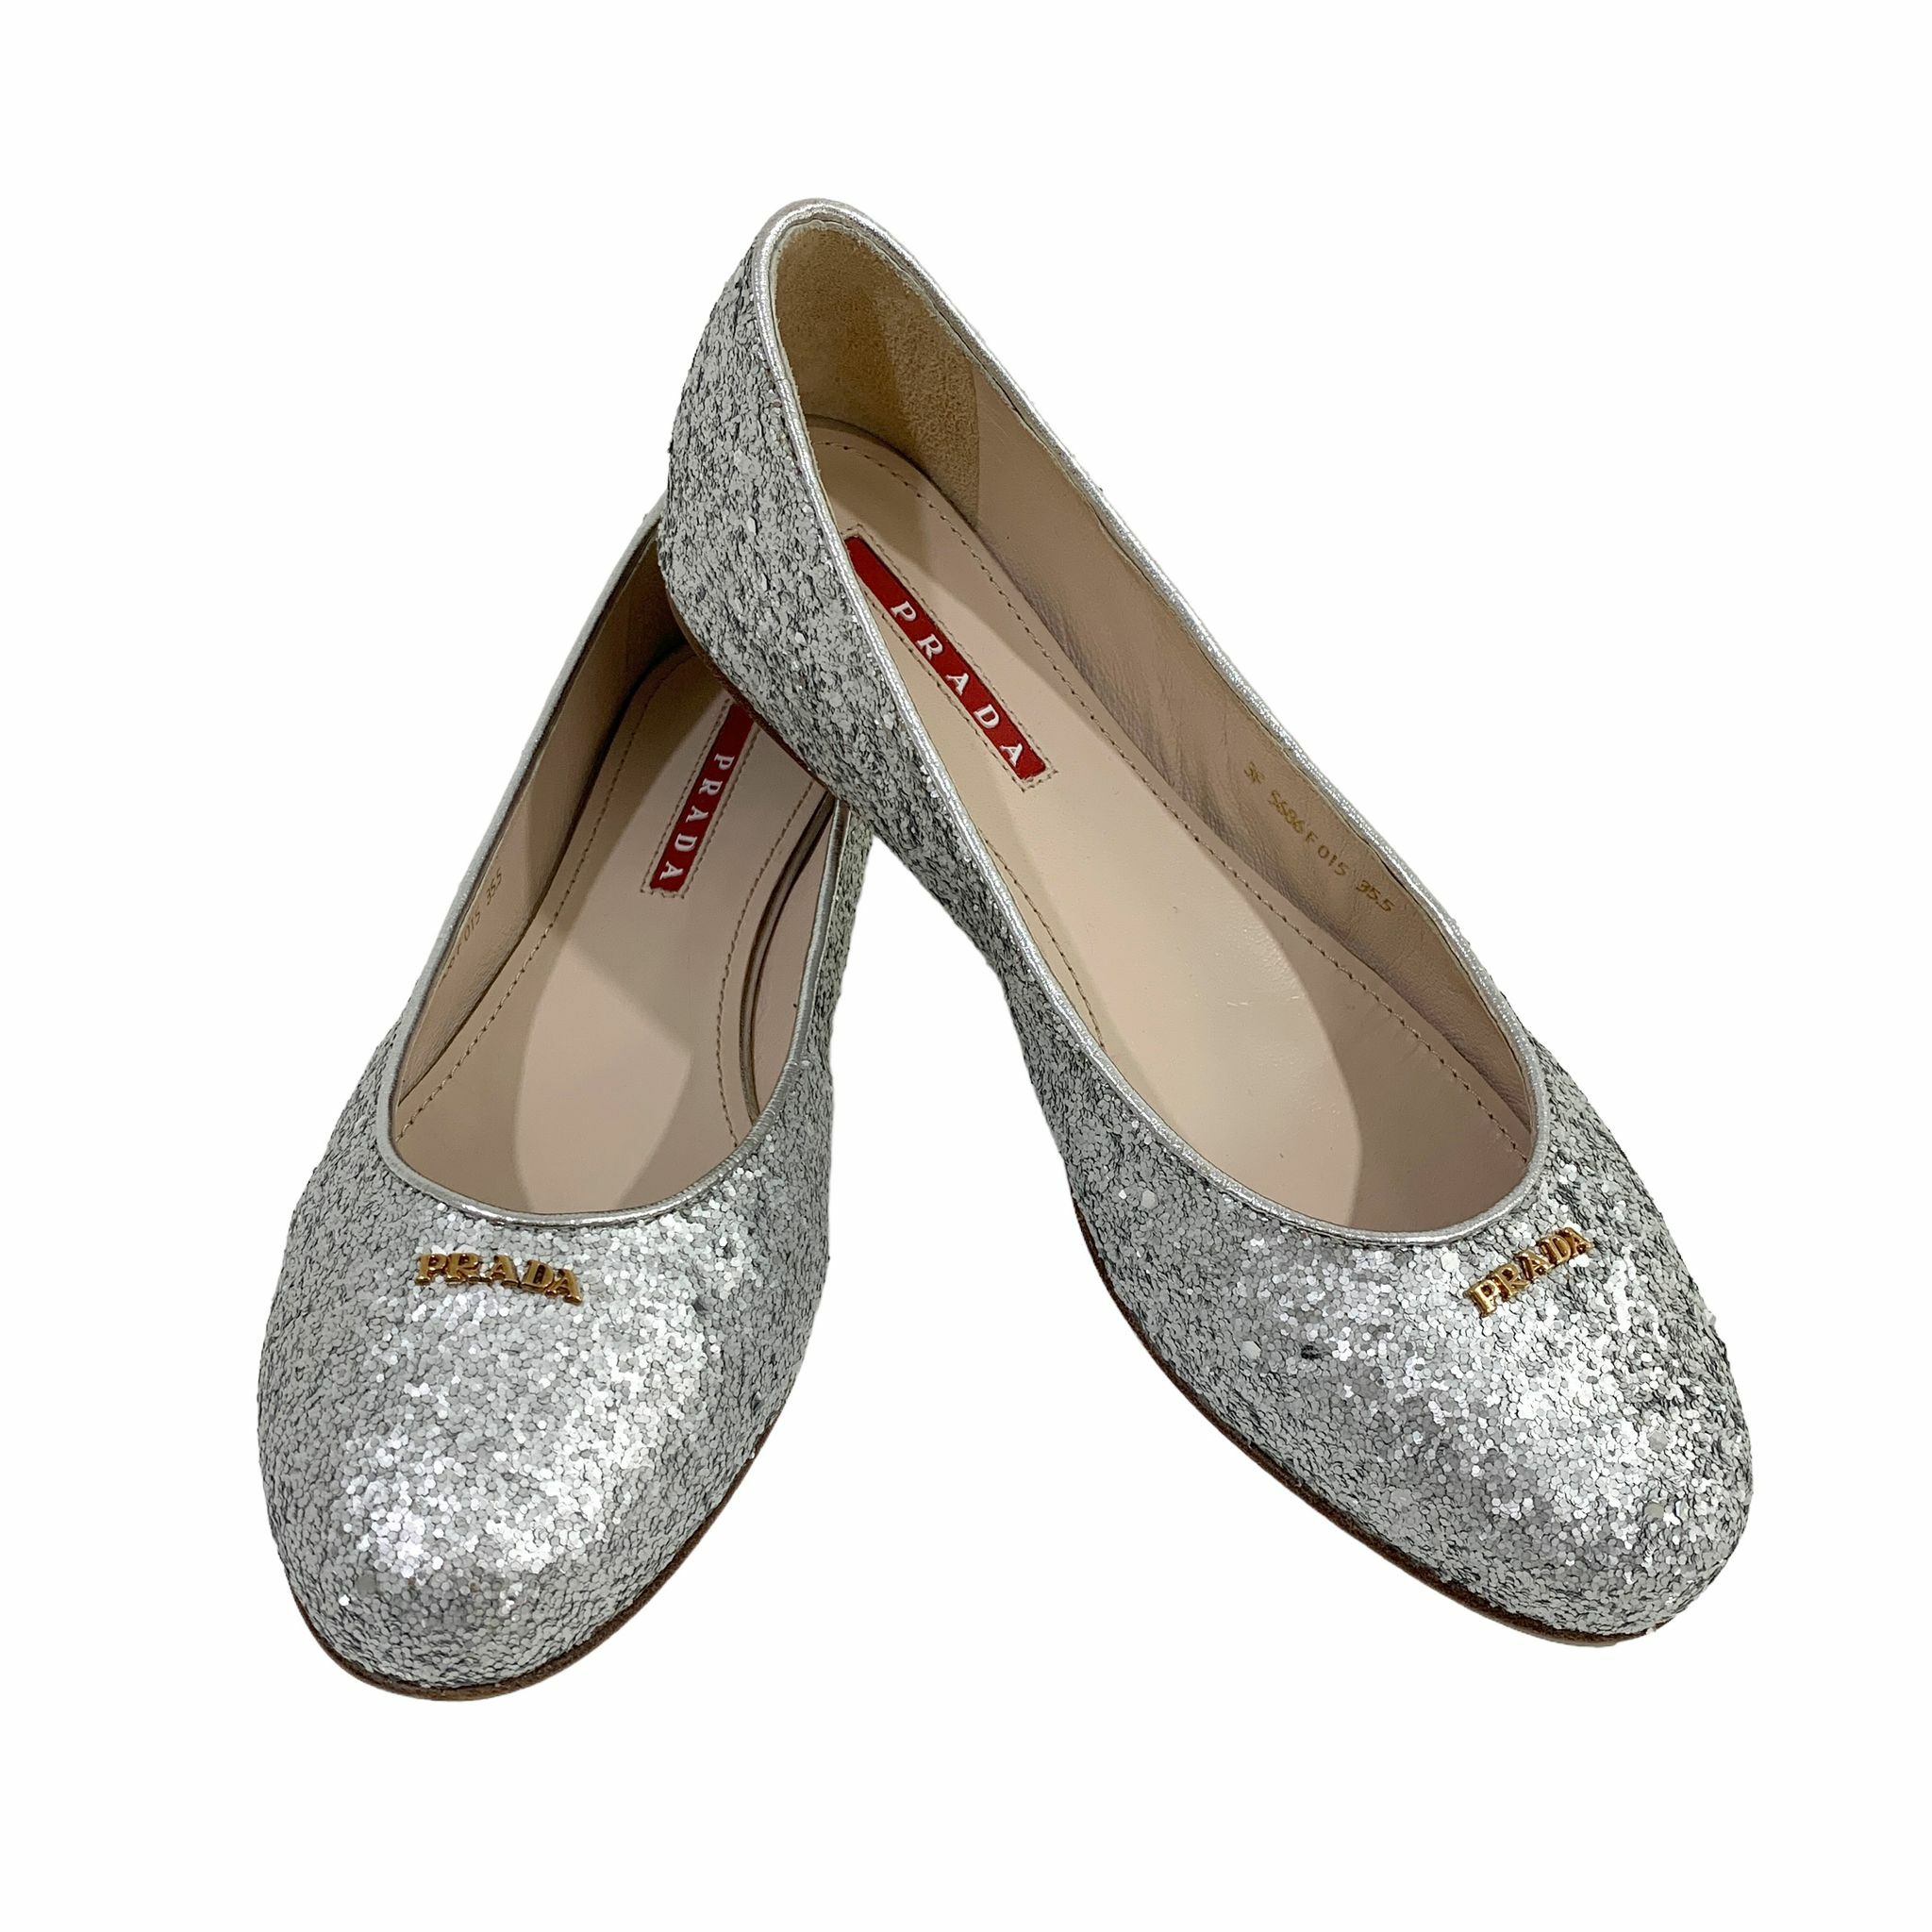 全新PRADA平底鞋35.5碼銀色珠片3F5686 #BRAND NEW #香榭站正品